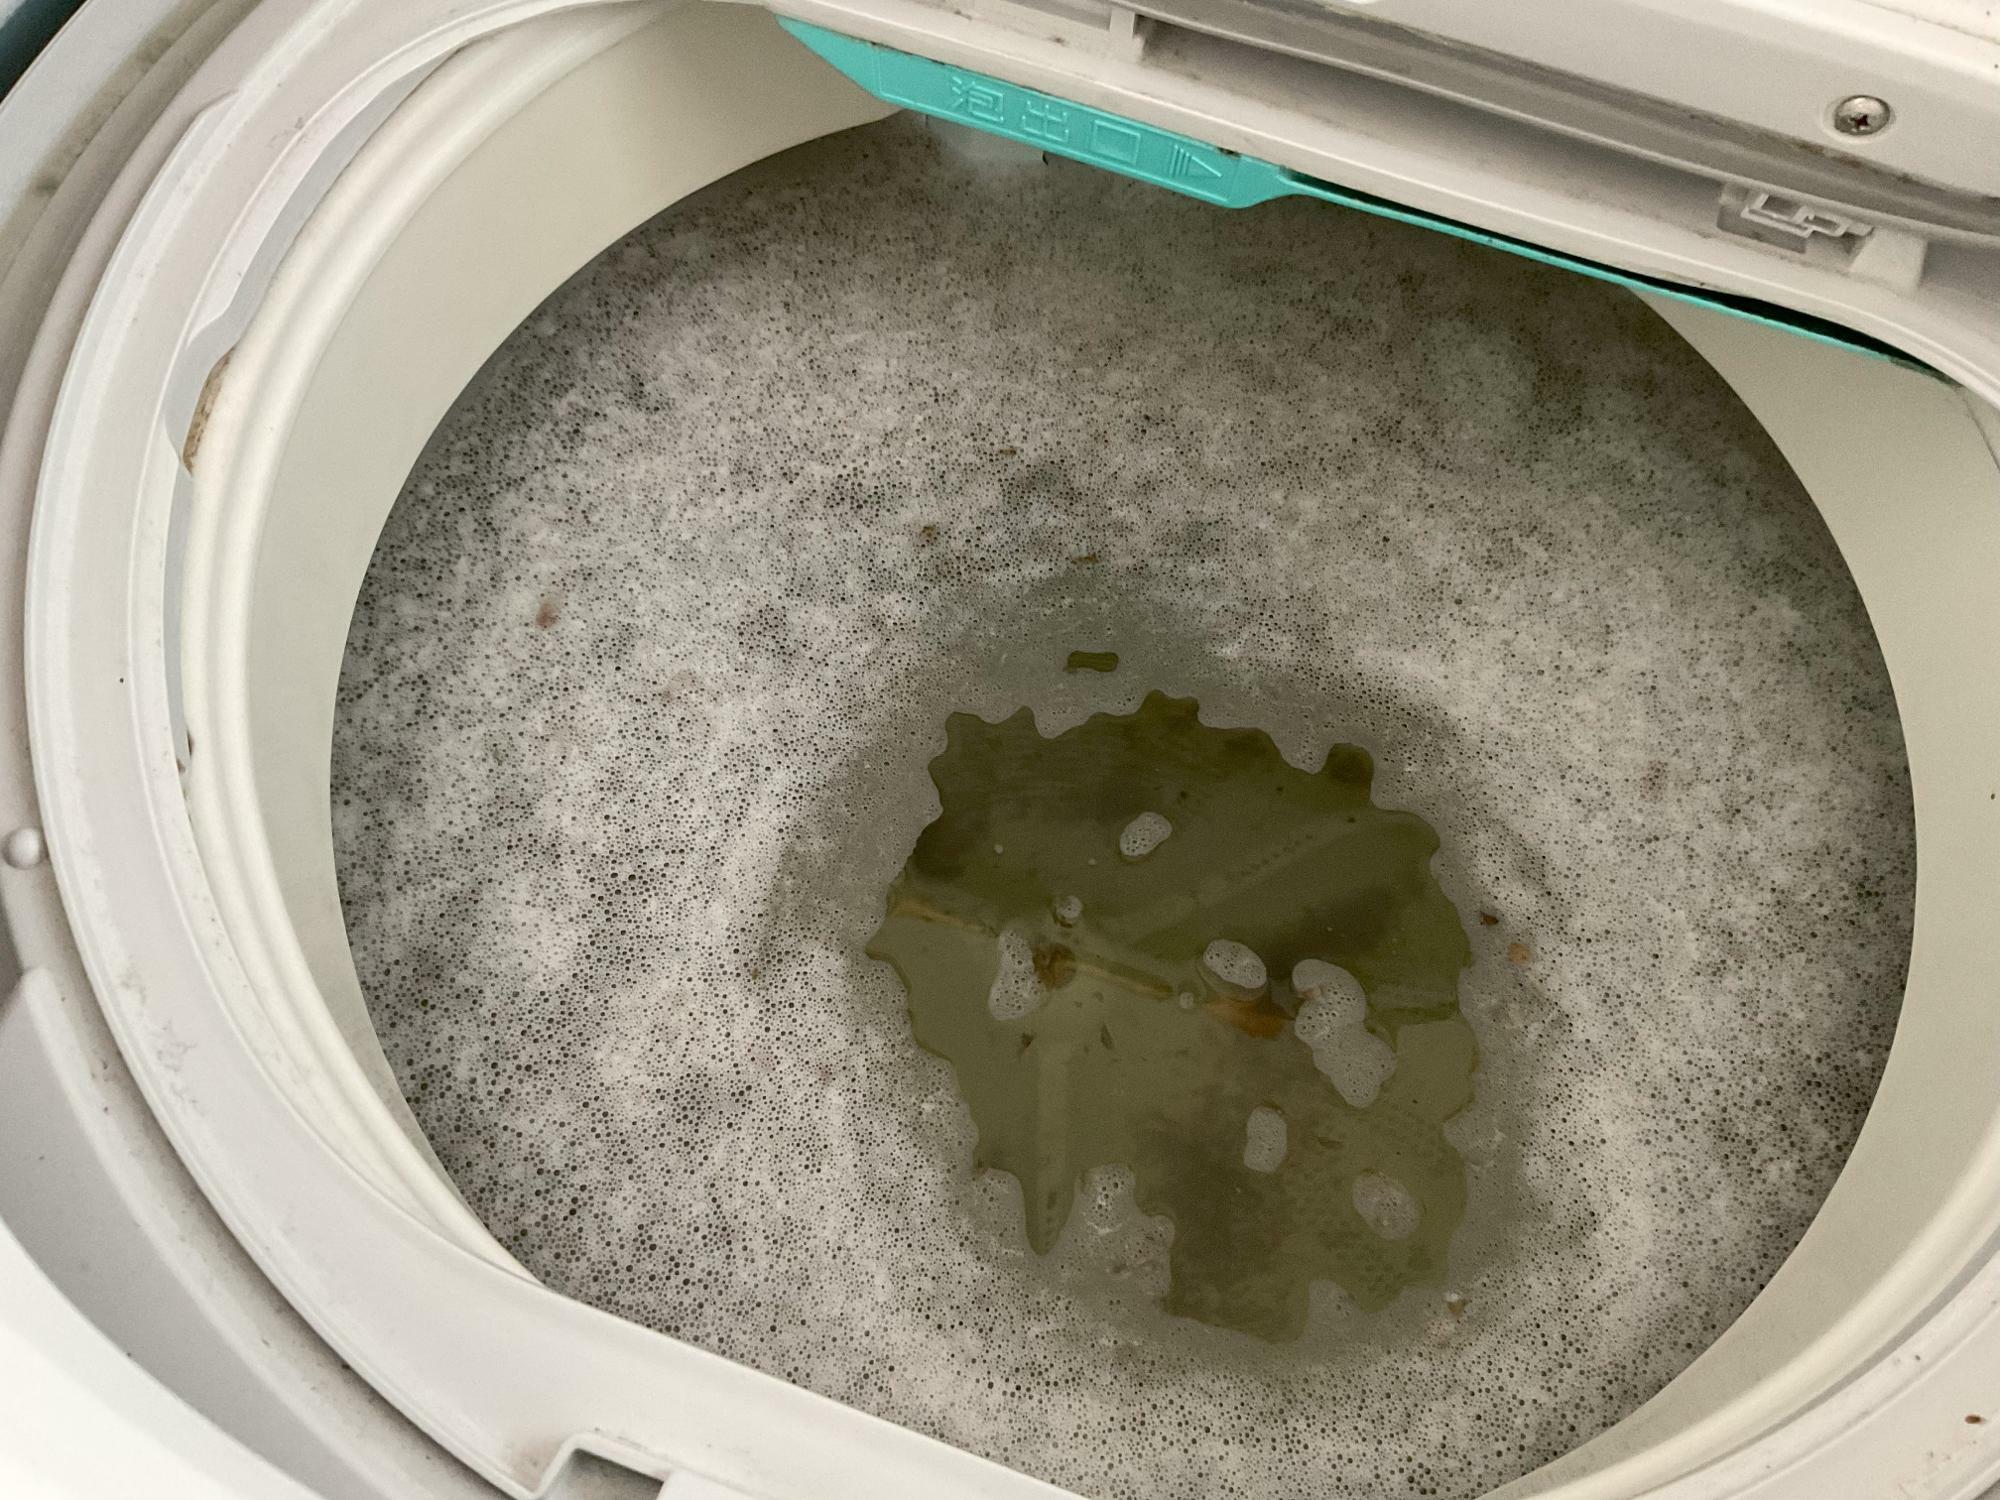 こんな洗濯槽で毎日洗濯をしていたら…。汚れが見えるとぞっとしますよね。